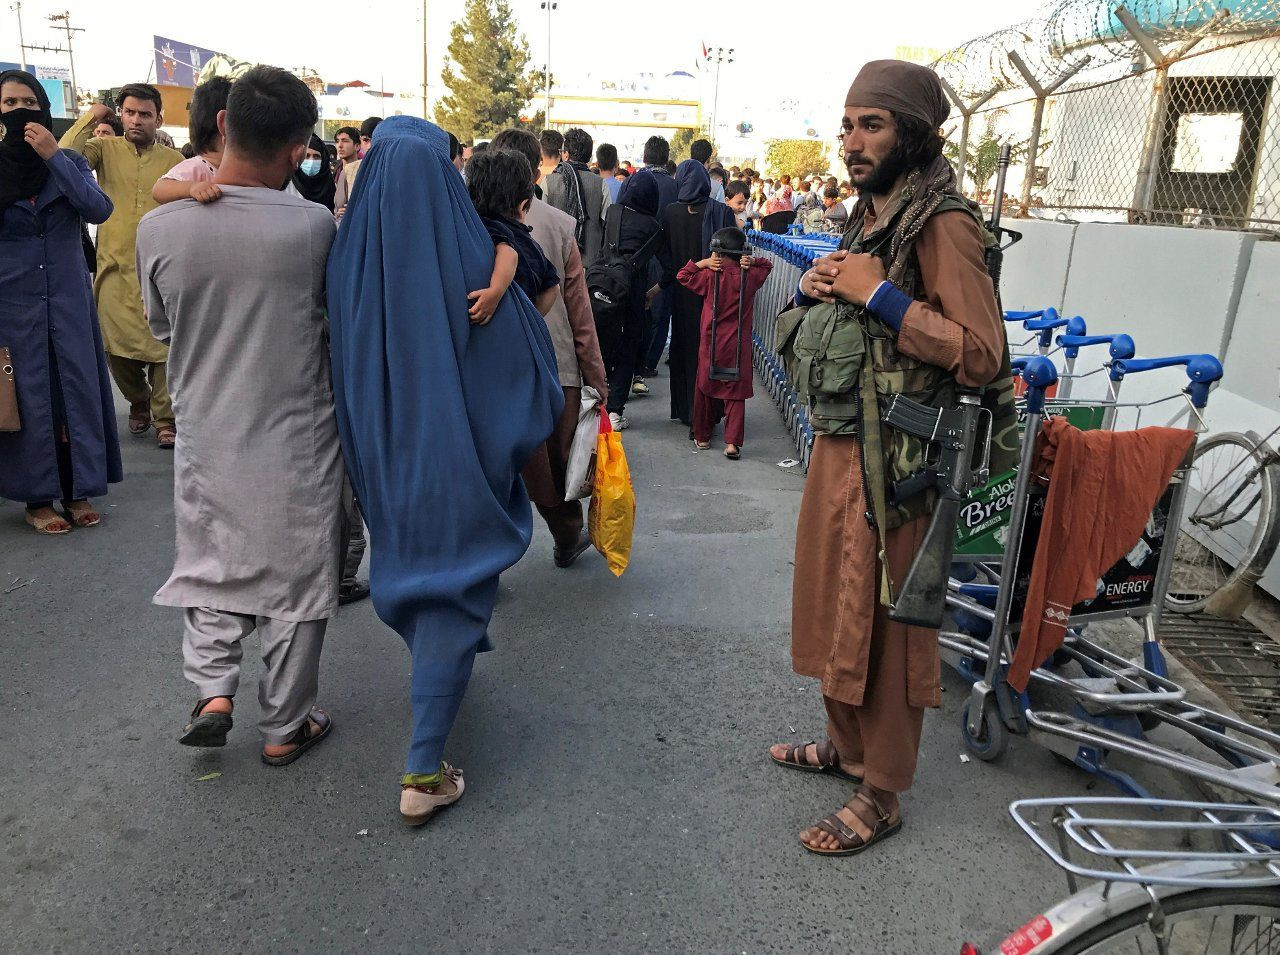 Afganistan'ı sarsan yedi gün: Son bir haftada neler yaşandı? - Sayfa 2